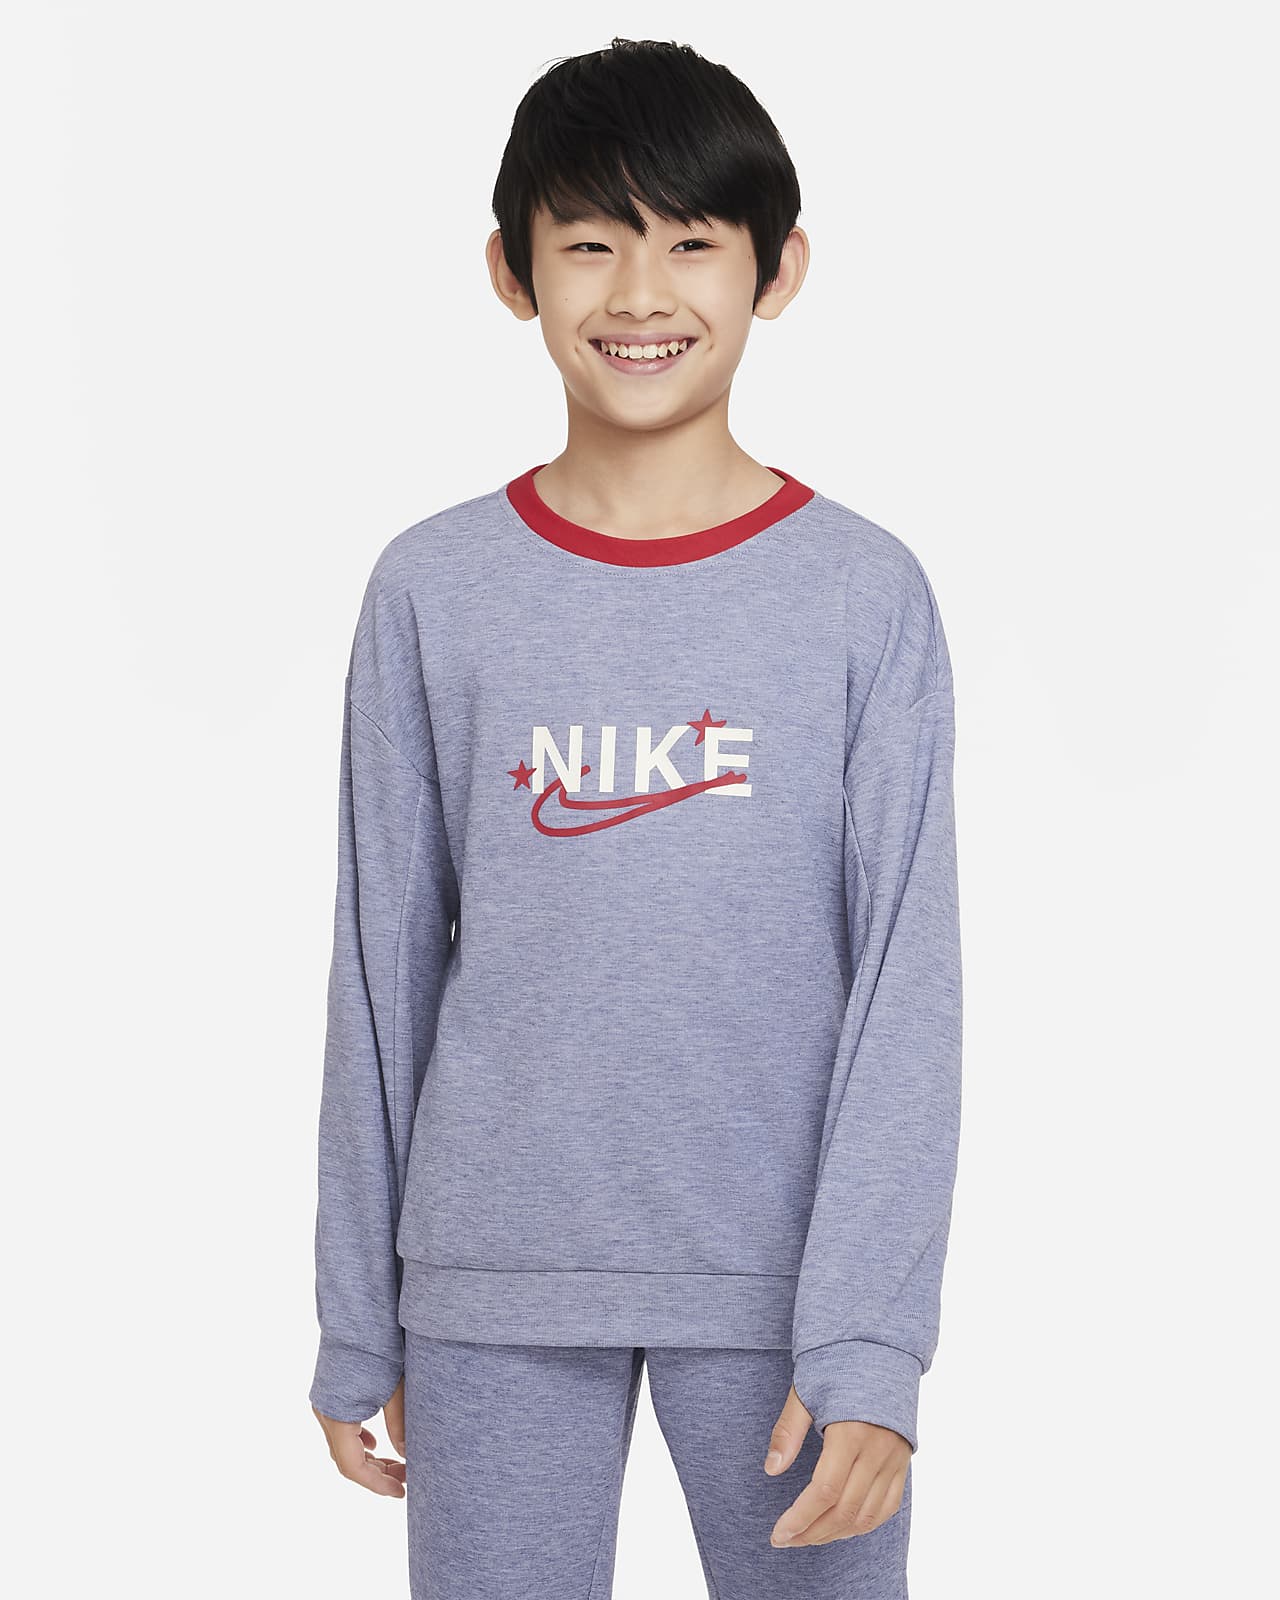 Nike Dri-FIT Performance Select Trainings-Sweatshirt mit Rundhalsausschnitt für ältere Kinder (Jungen)